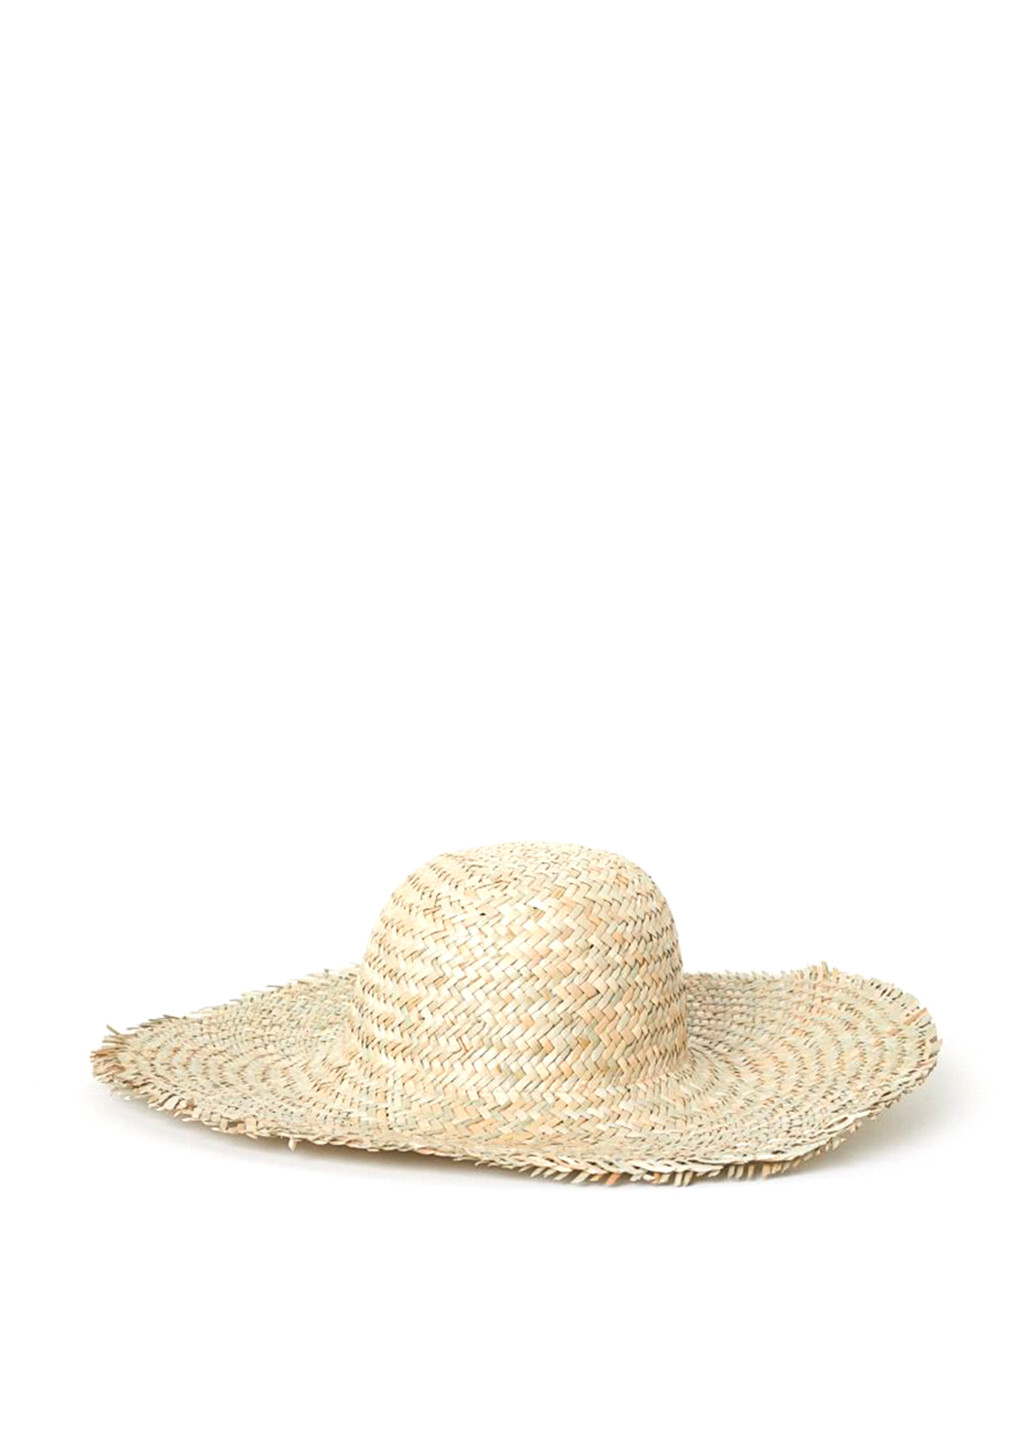 Шляпа H&M широкополая однотонная песочная пляжная солома